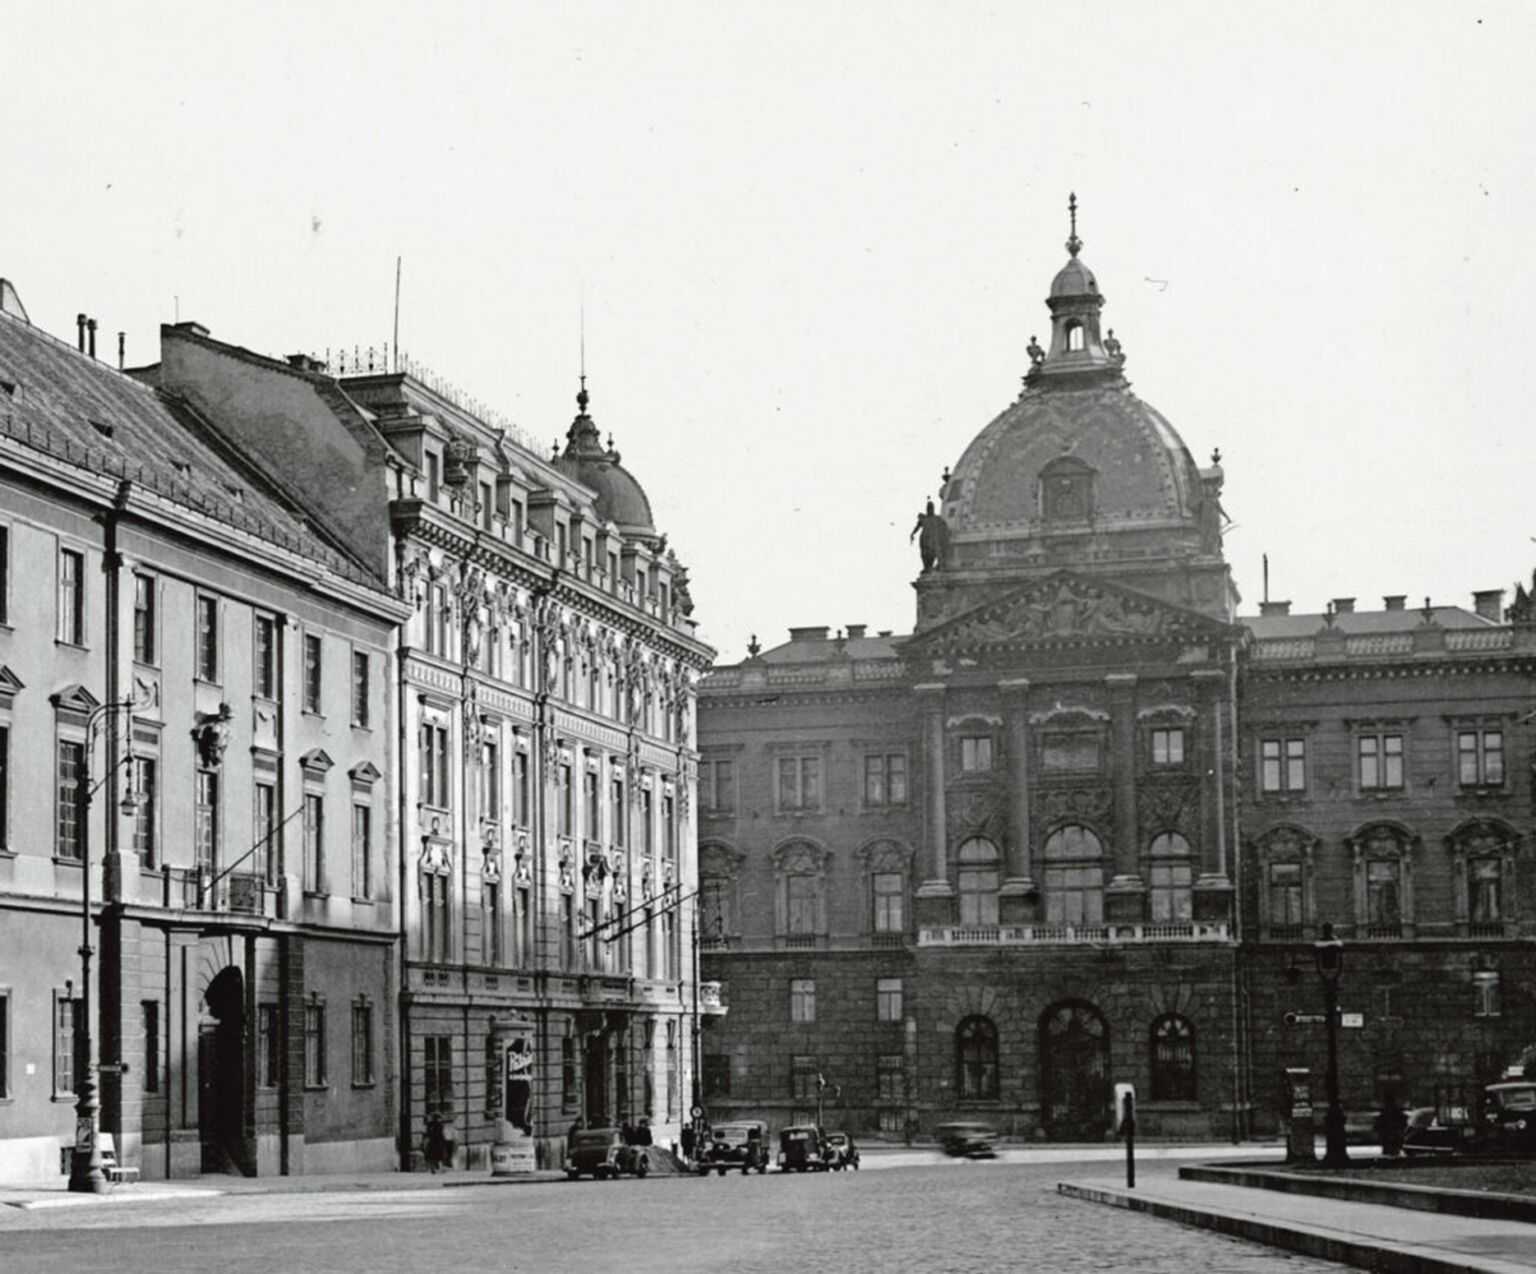 Baloldalon az egykori Vöröskeresztnek a Külügyminisztérium számára átalakított épülete, szemben az egykori Honvéd Főparancsnokság Dísz téri épülete 1944 előtt l Fotó: Fortepan